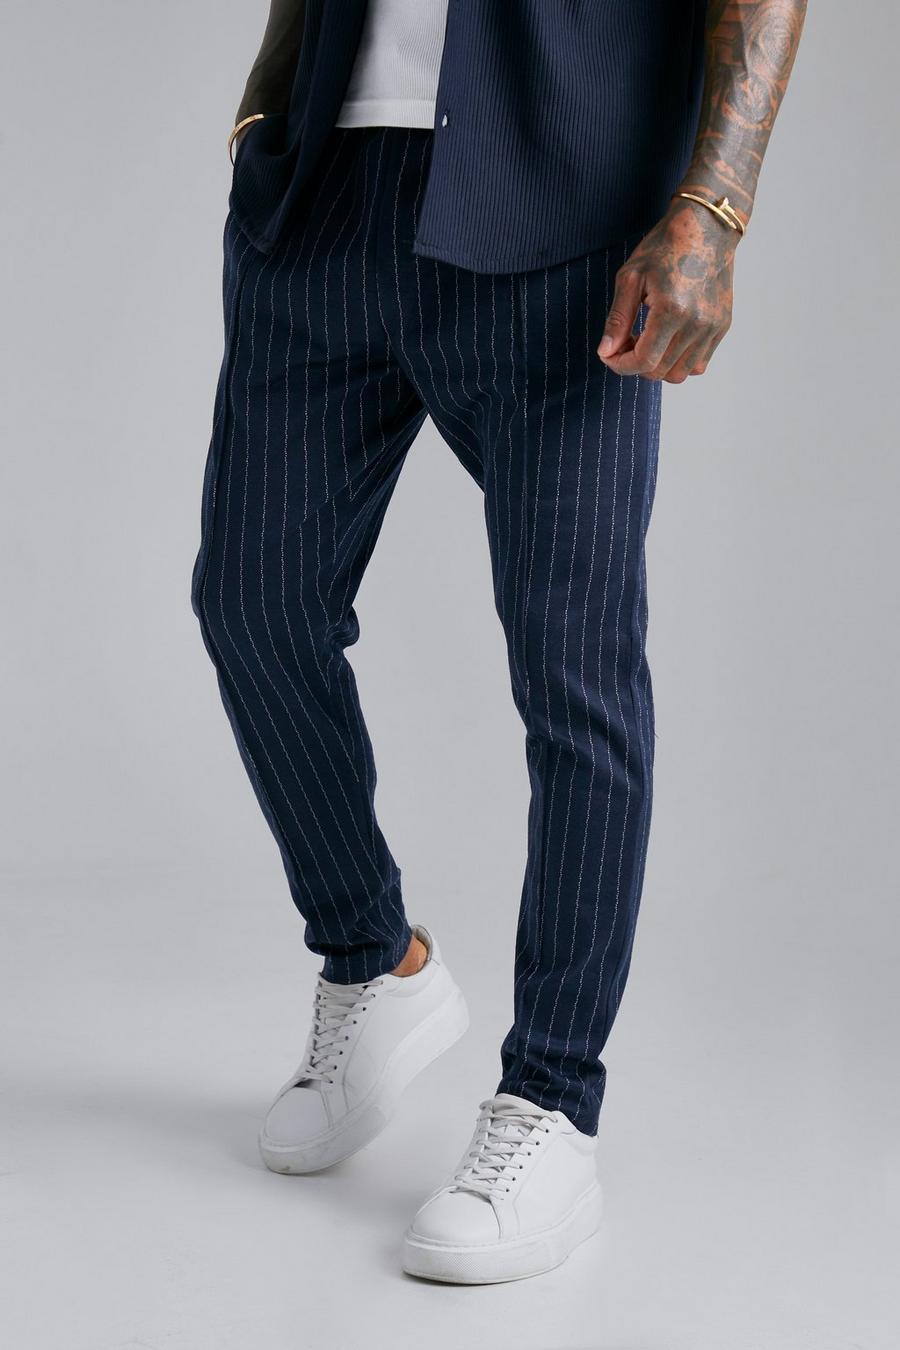 Pantalón deportivo pitillo de jacquard con rayas fina y alforza, Navy azul marino